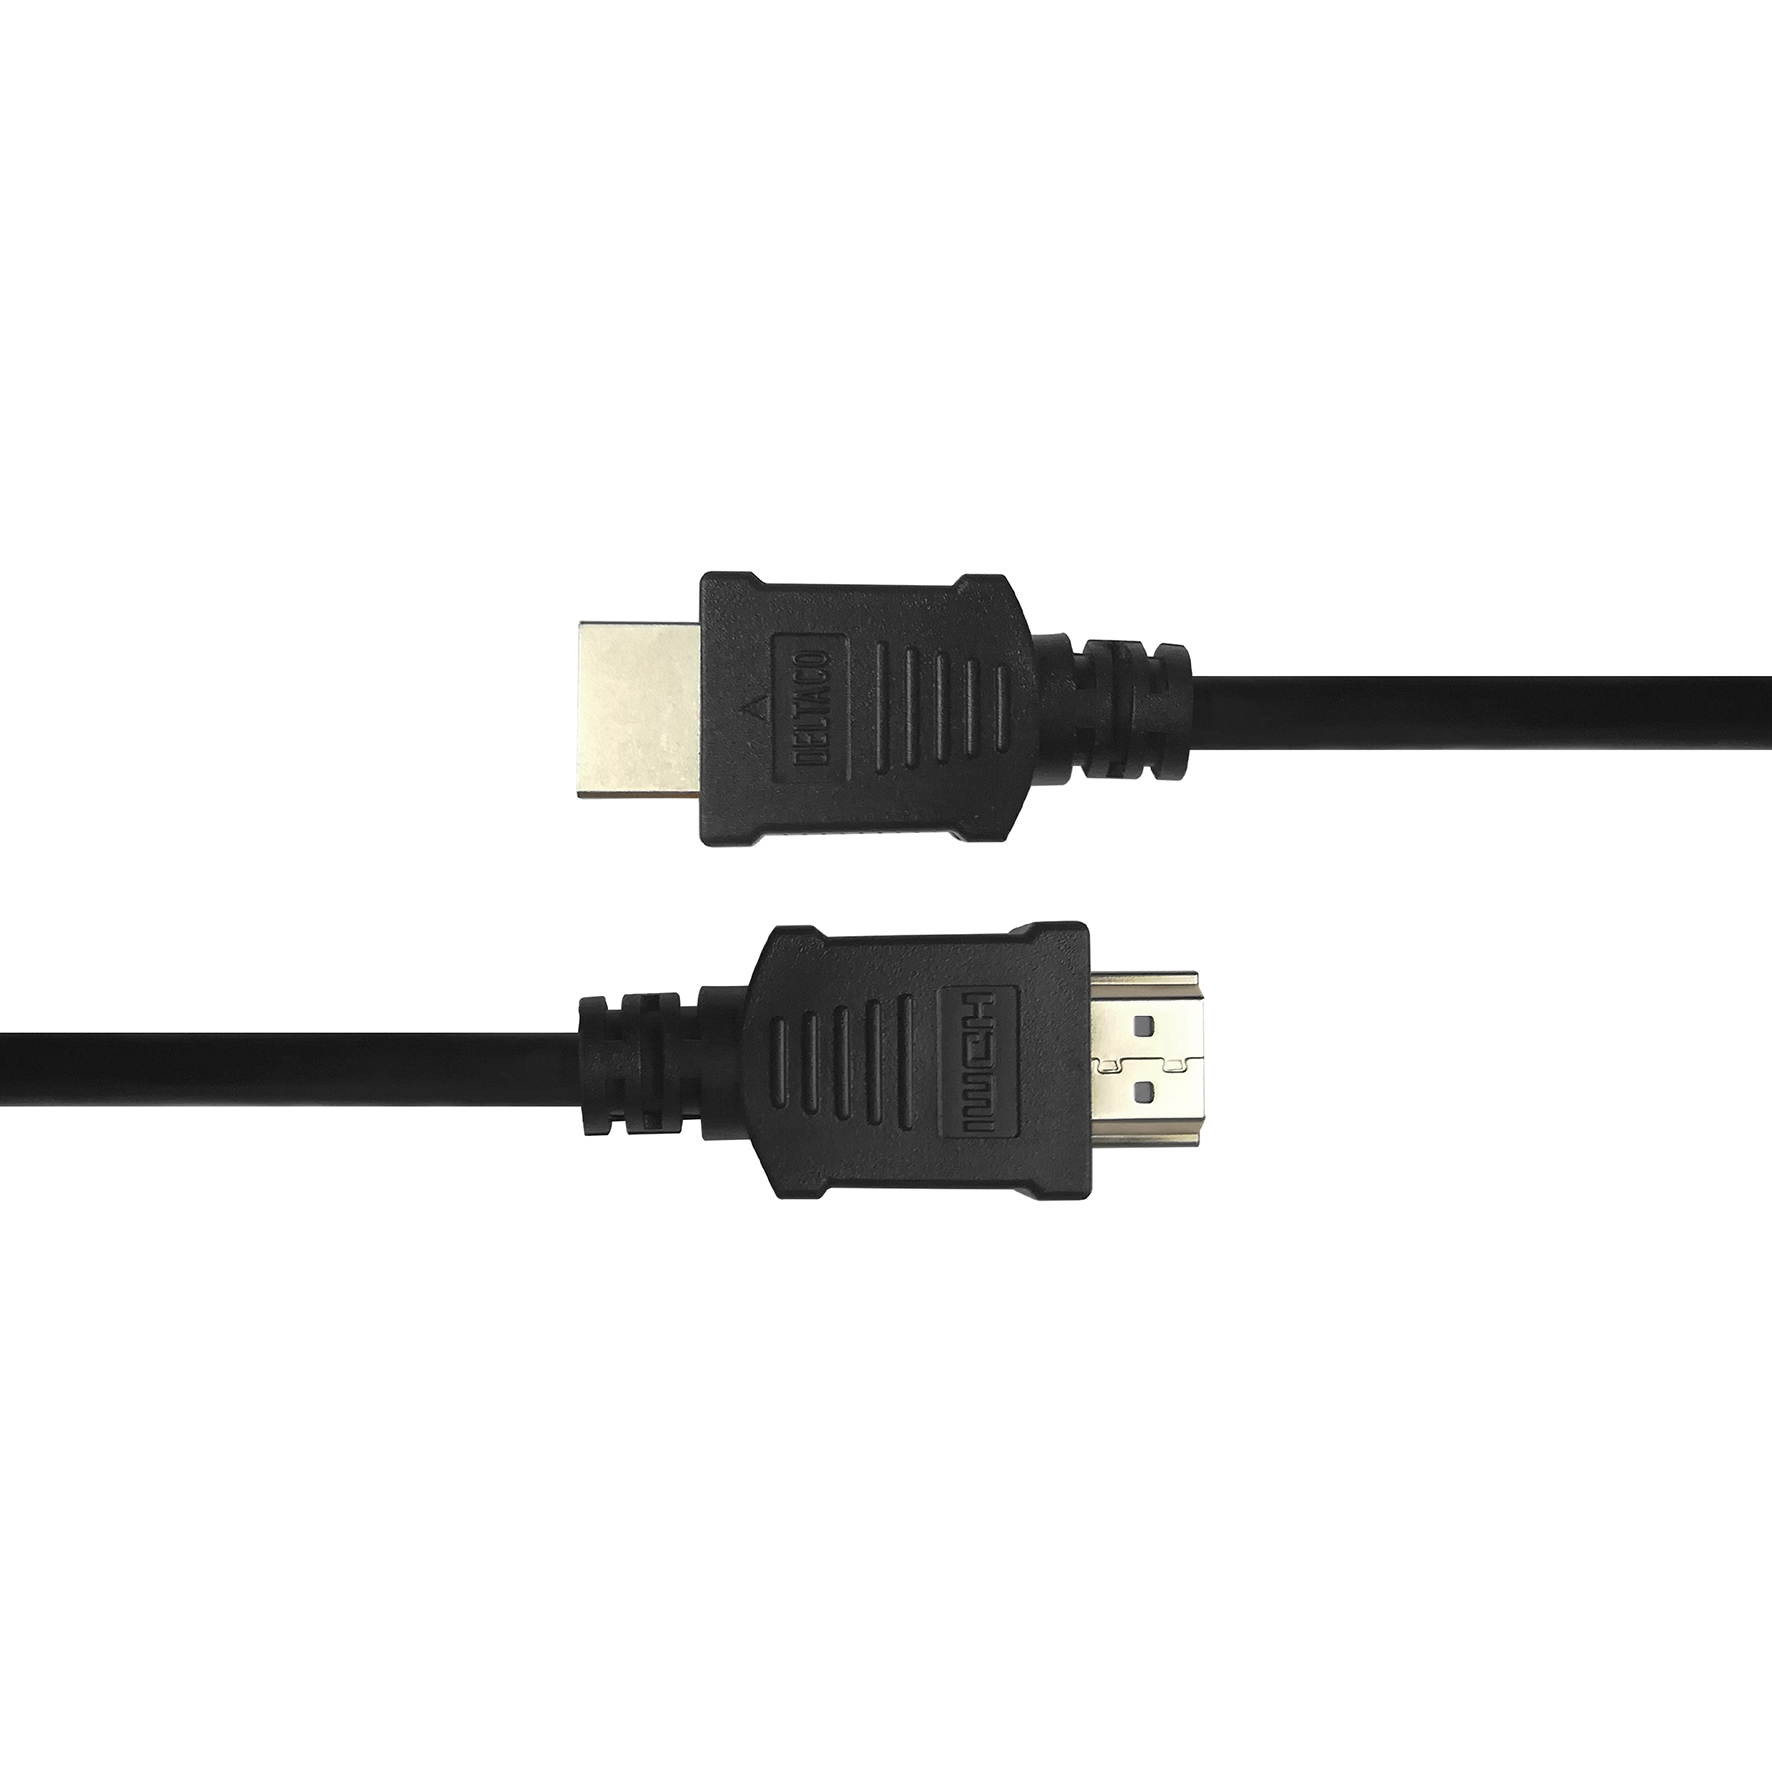 [8561361] HDMI kabel, 4K UHD, 2m, svart